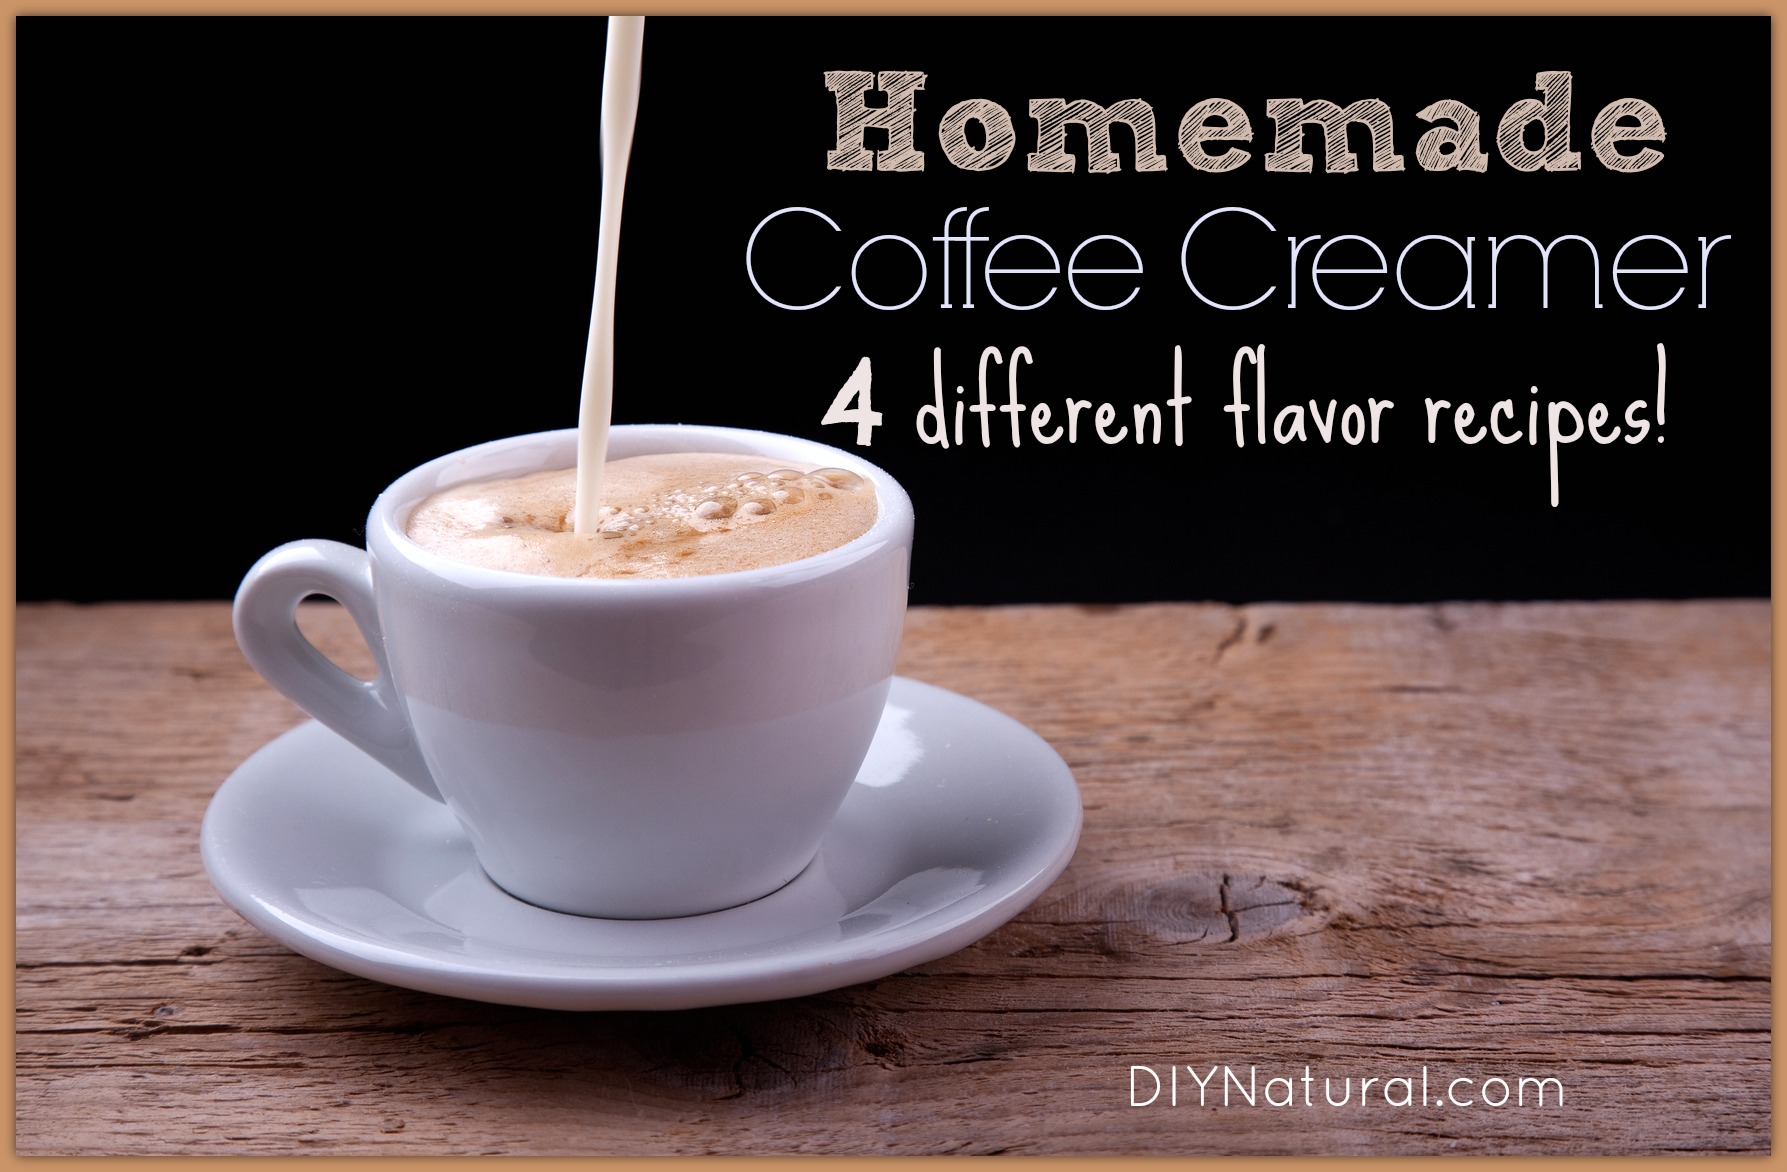 Homemade Coffee Creamer - Four